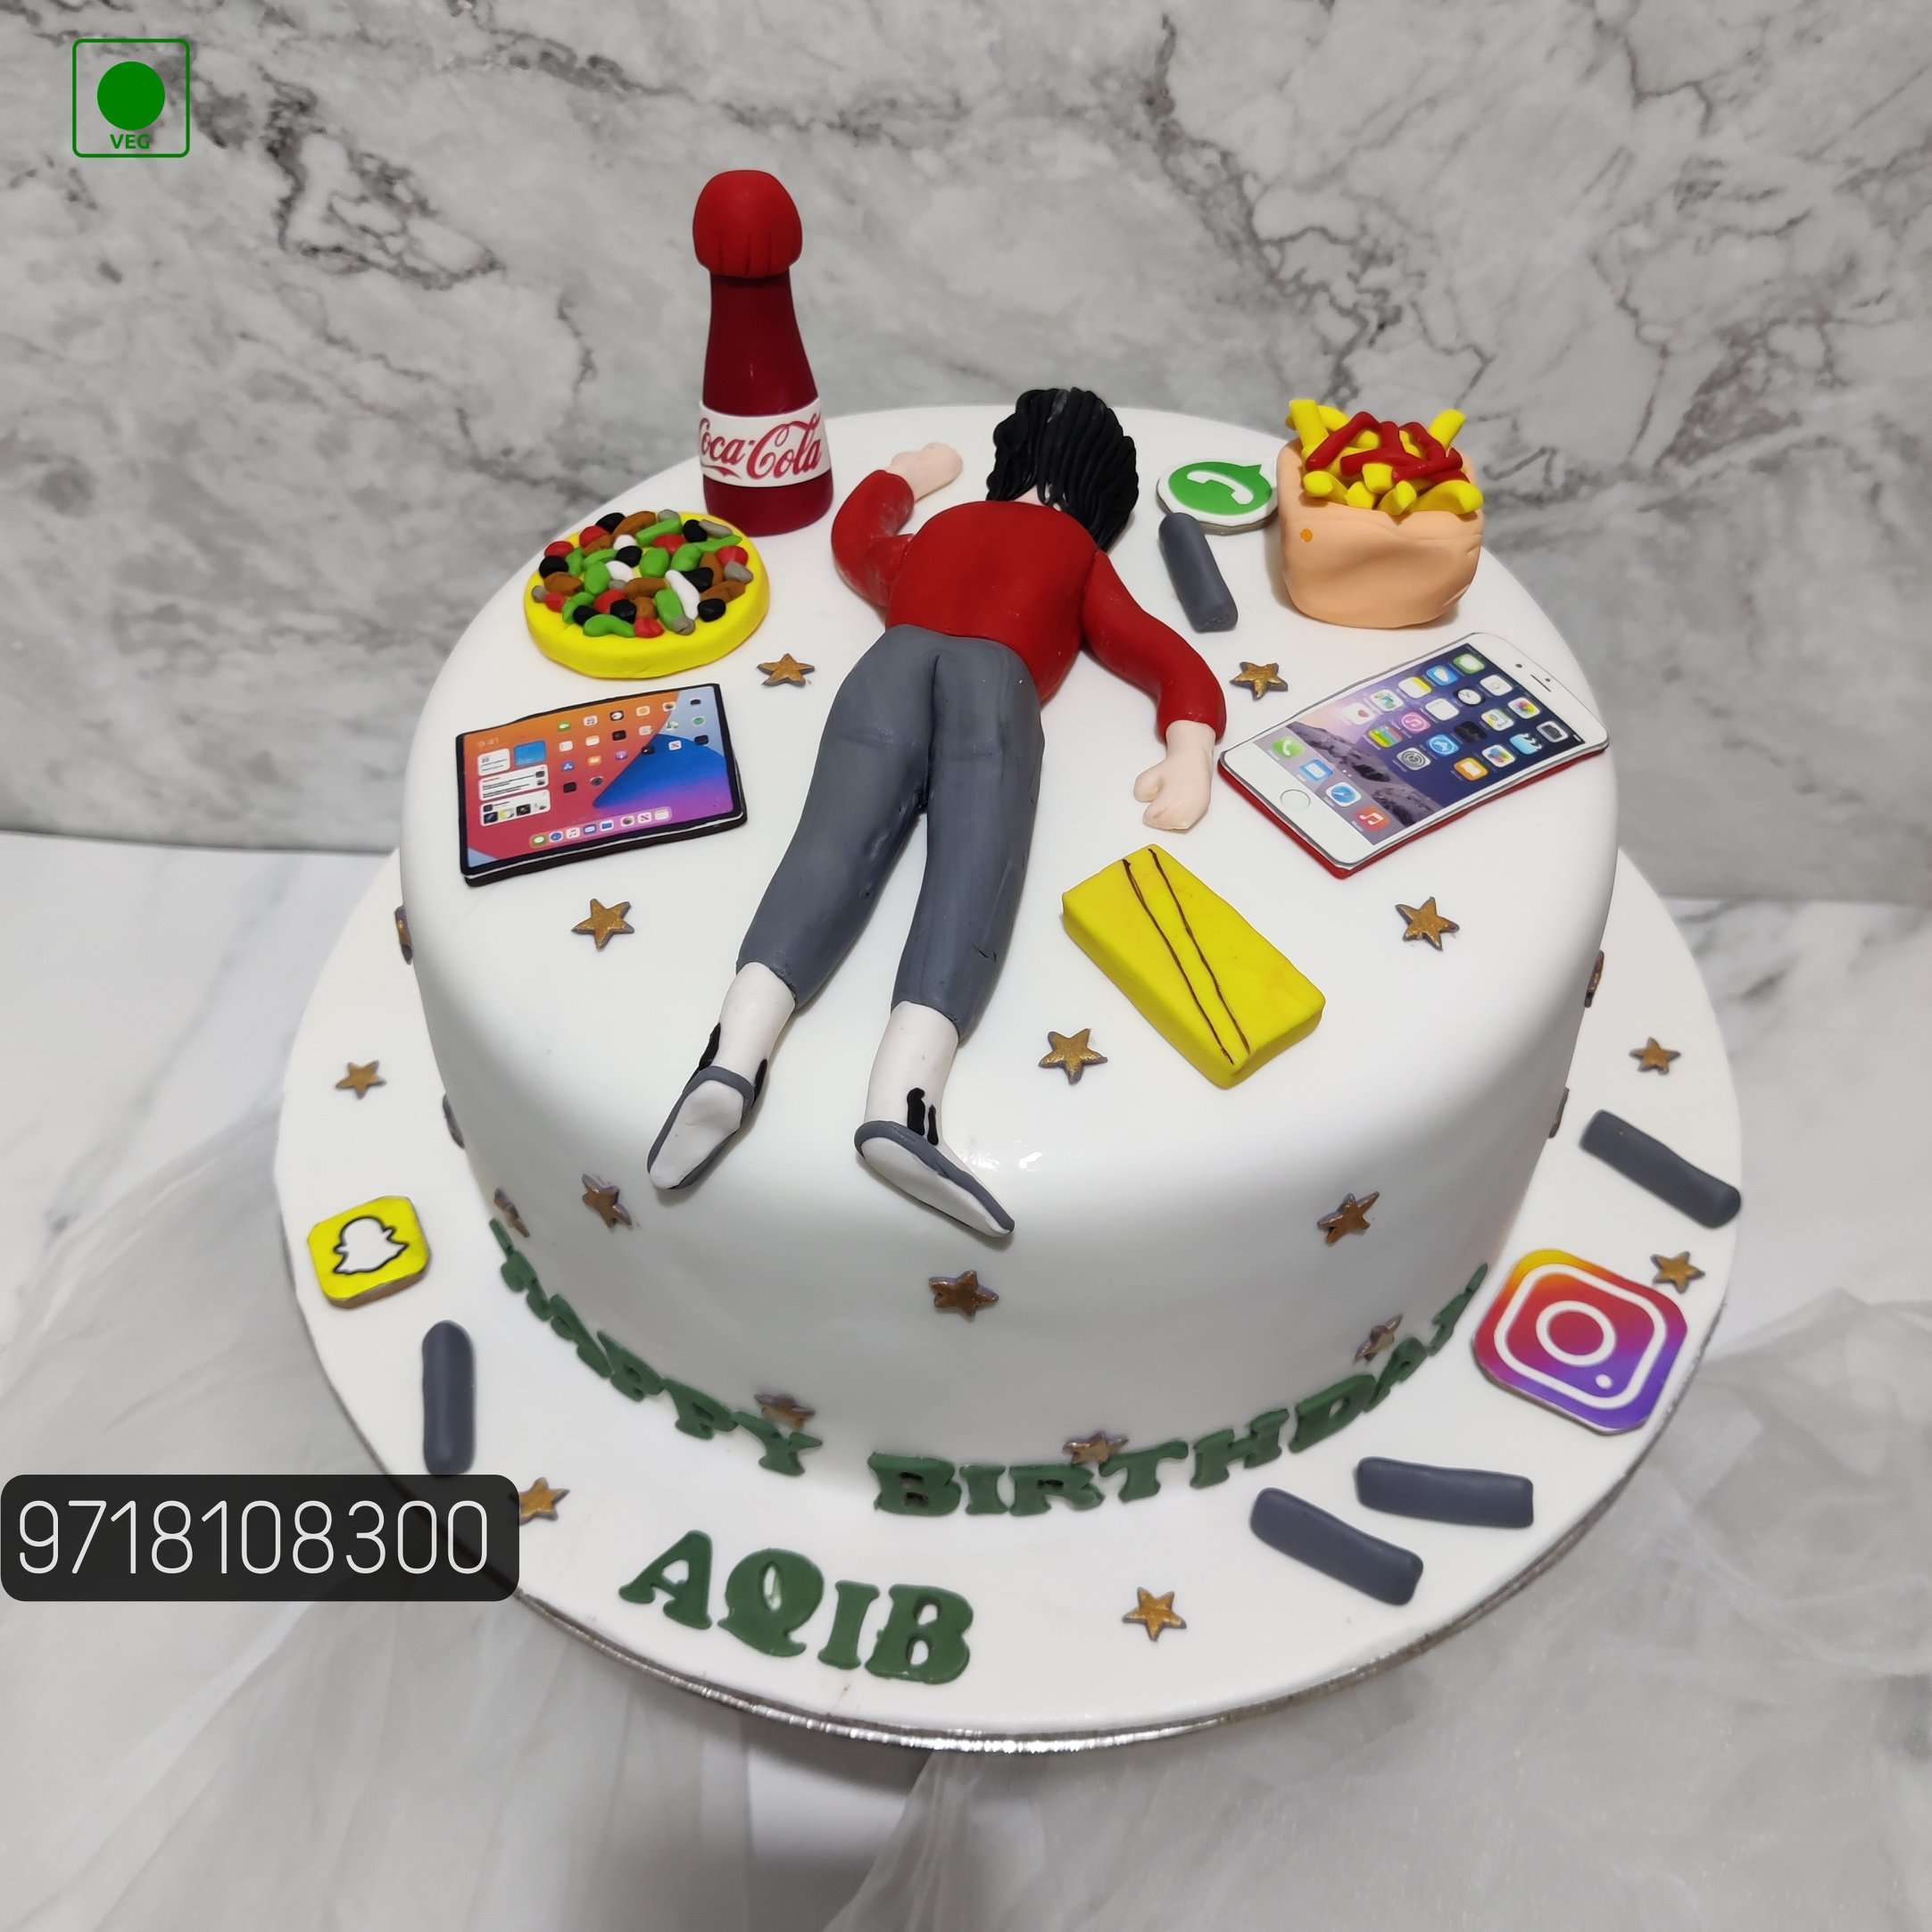 Birthday Cakes for Men - Hands On Design Cakes-sonthuy.vn